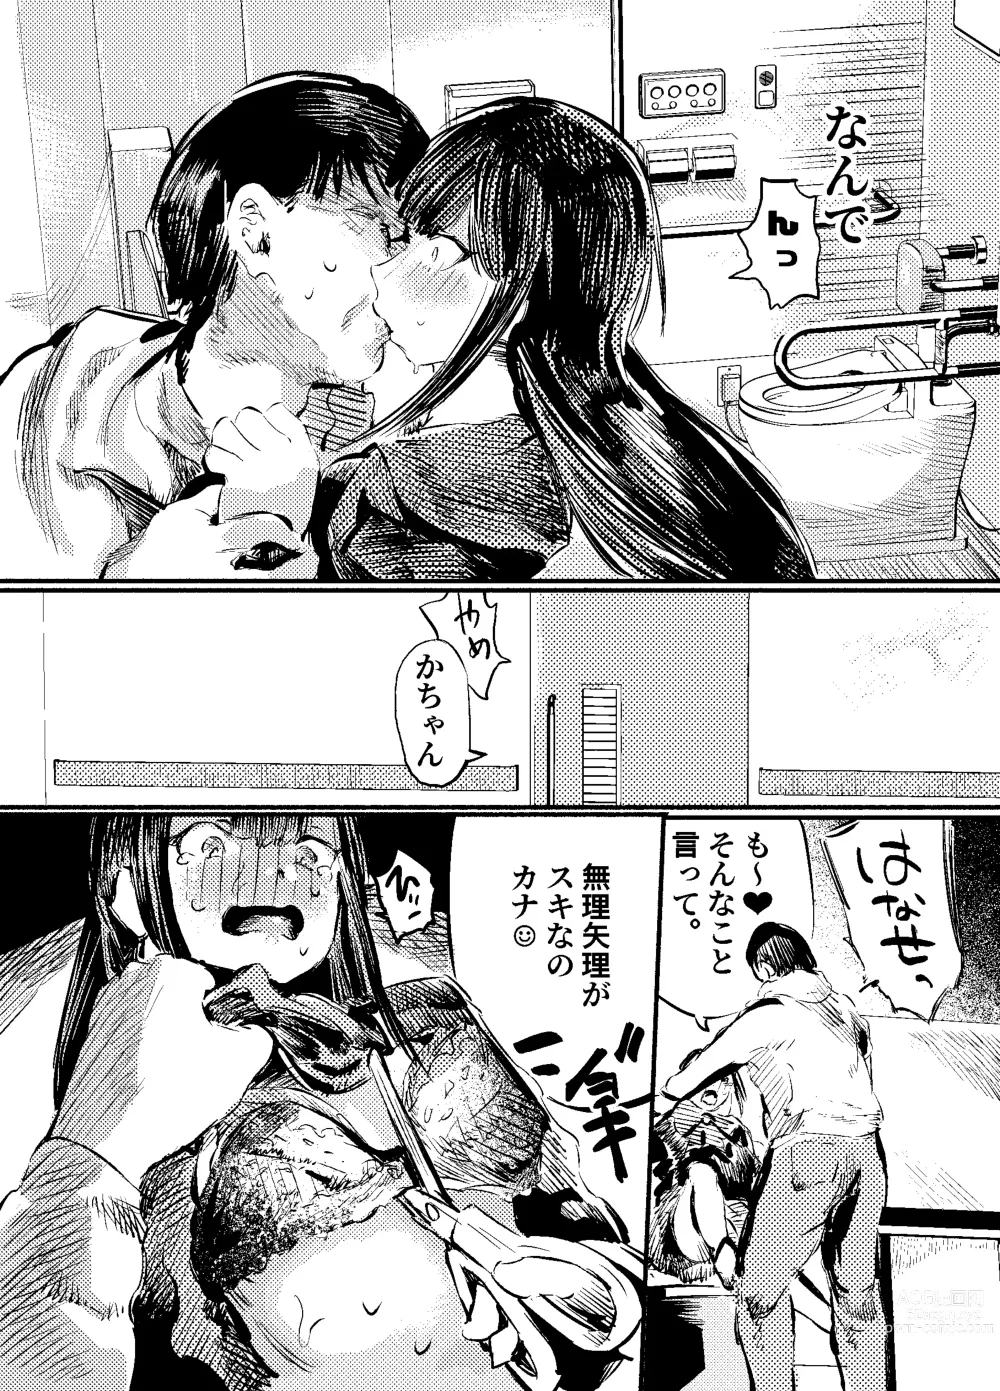 Page 14 of doujinshi Youko Ayako